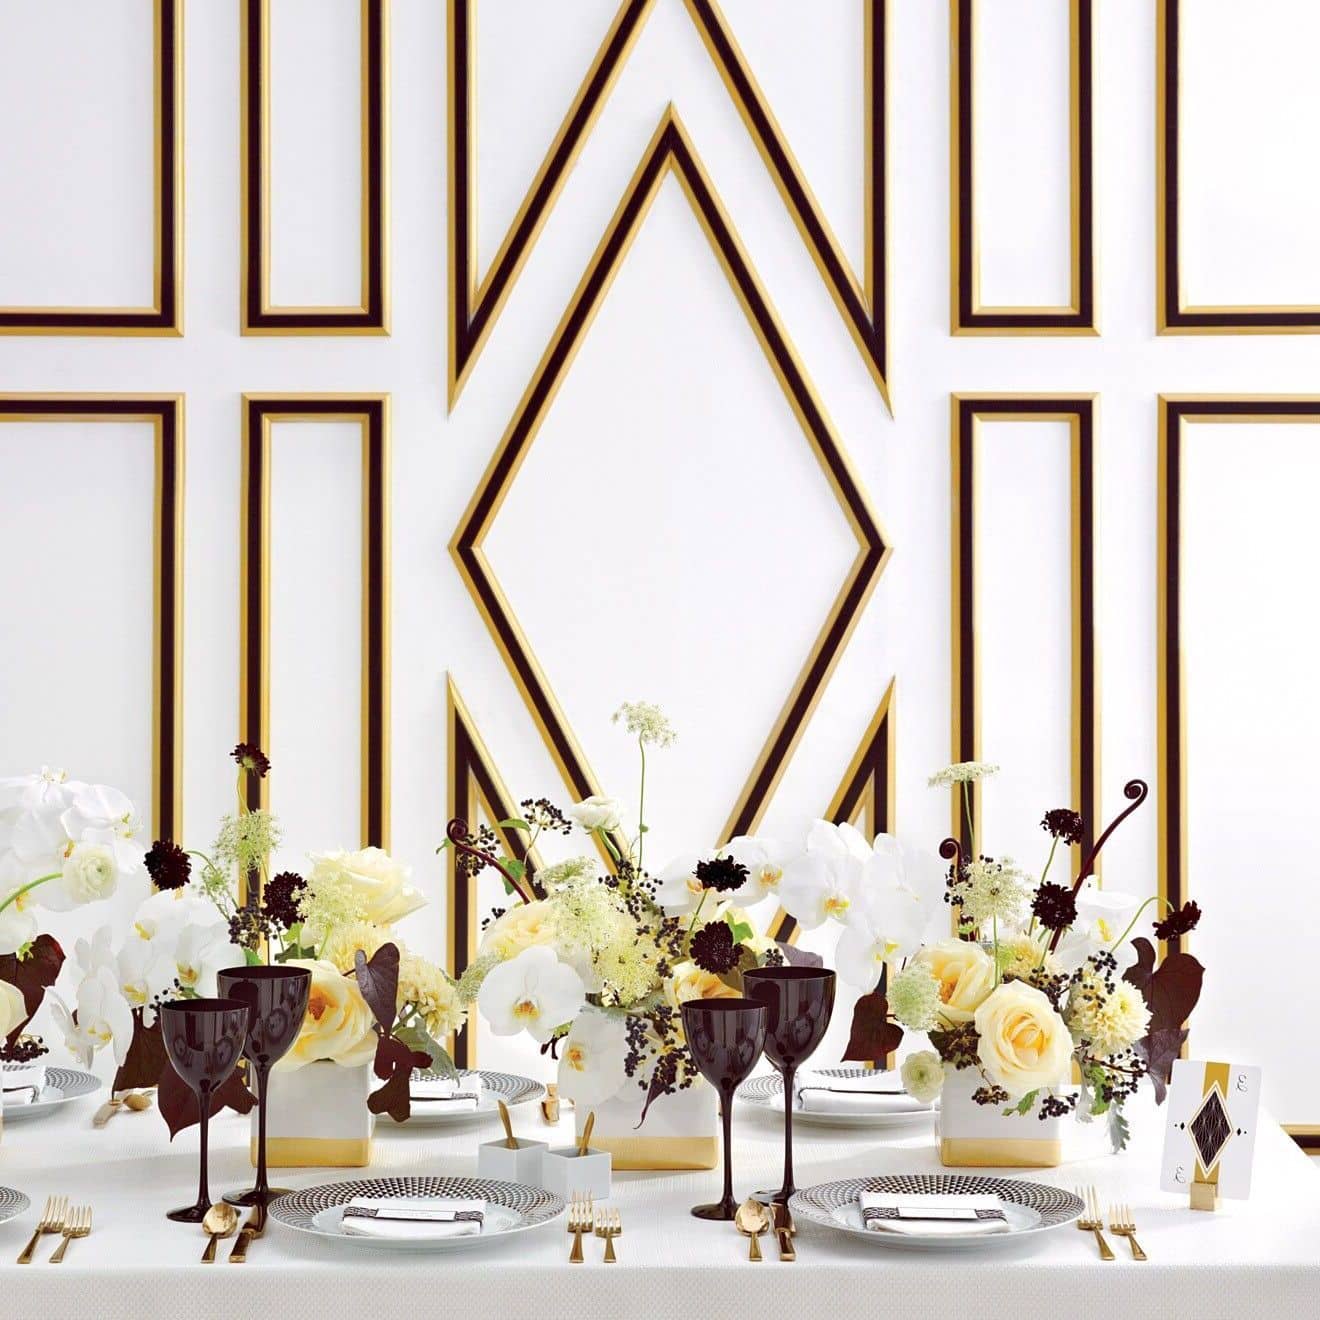 Симпатичные фужеры в темно-коричневом цвете – эффектное дополнение праздничного стола